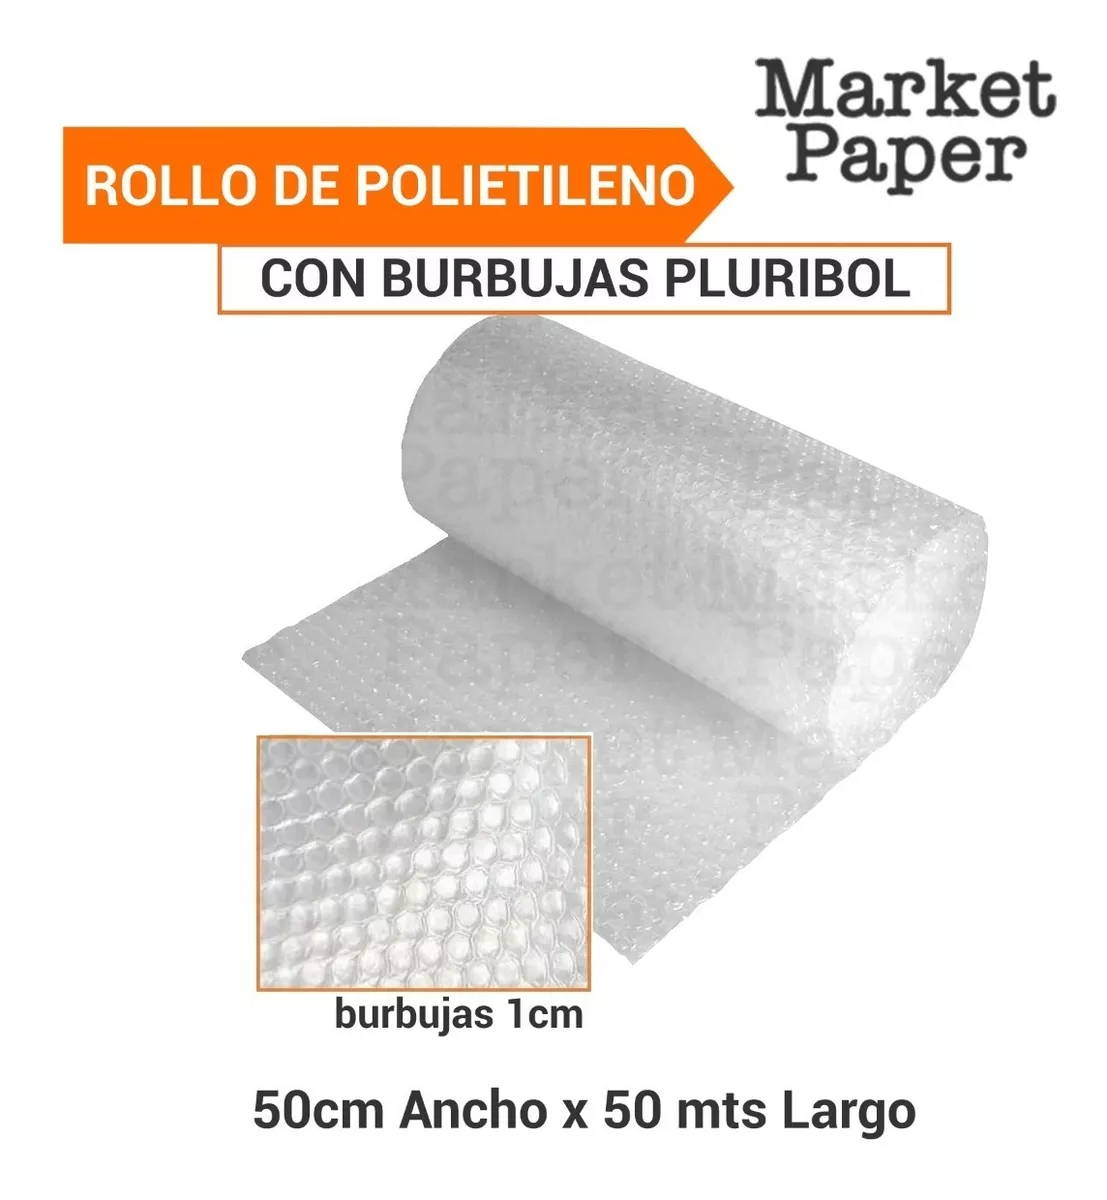 Rollo De Polietileno Con Globitos Burbujas Pluribol De 50cm